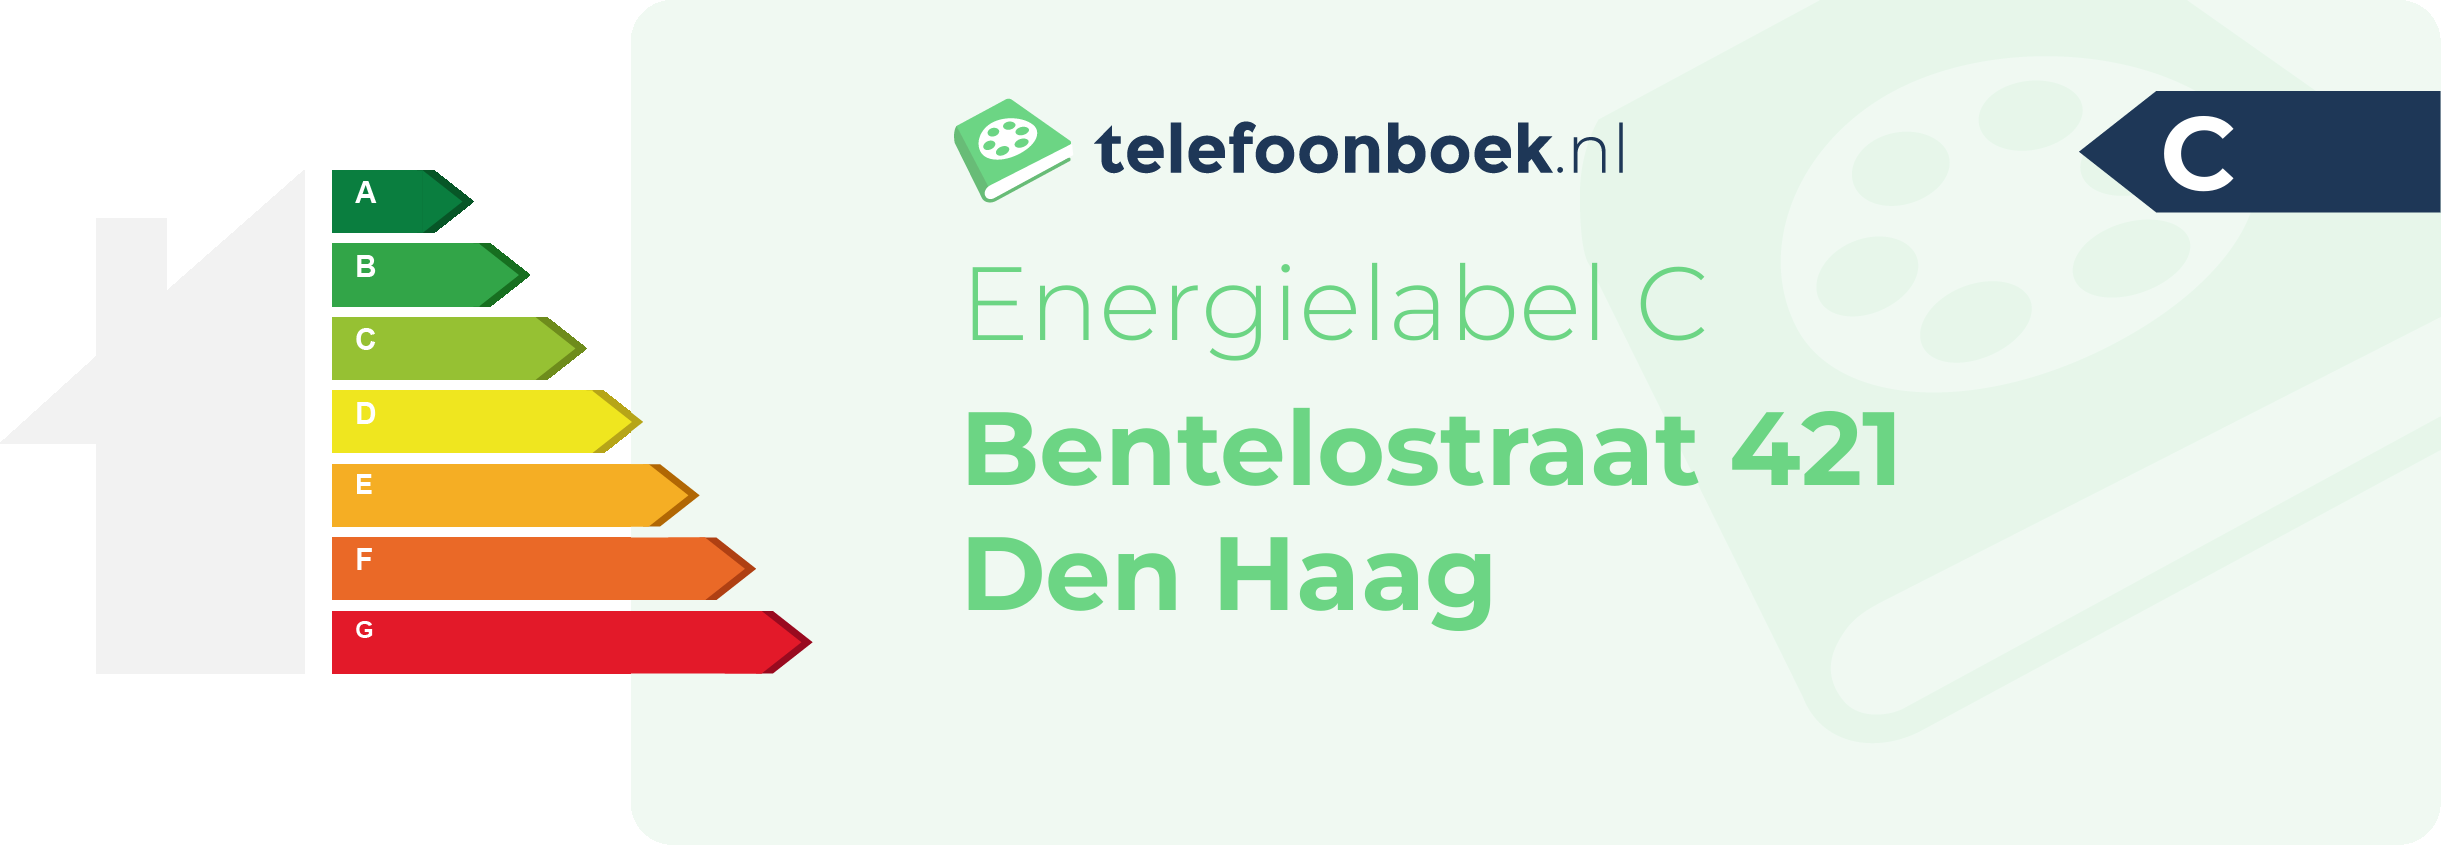 Energielabel Bentelostraat 421 Den Haag